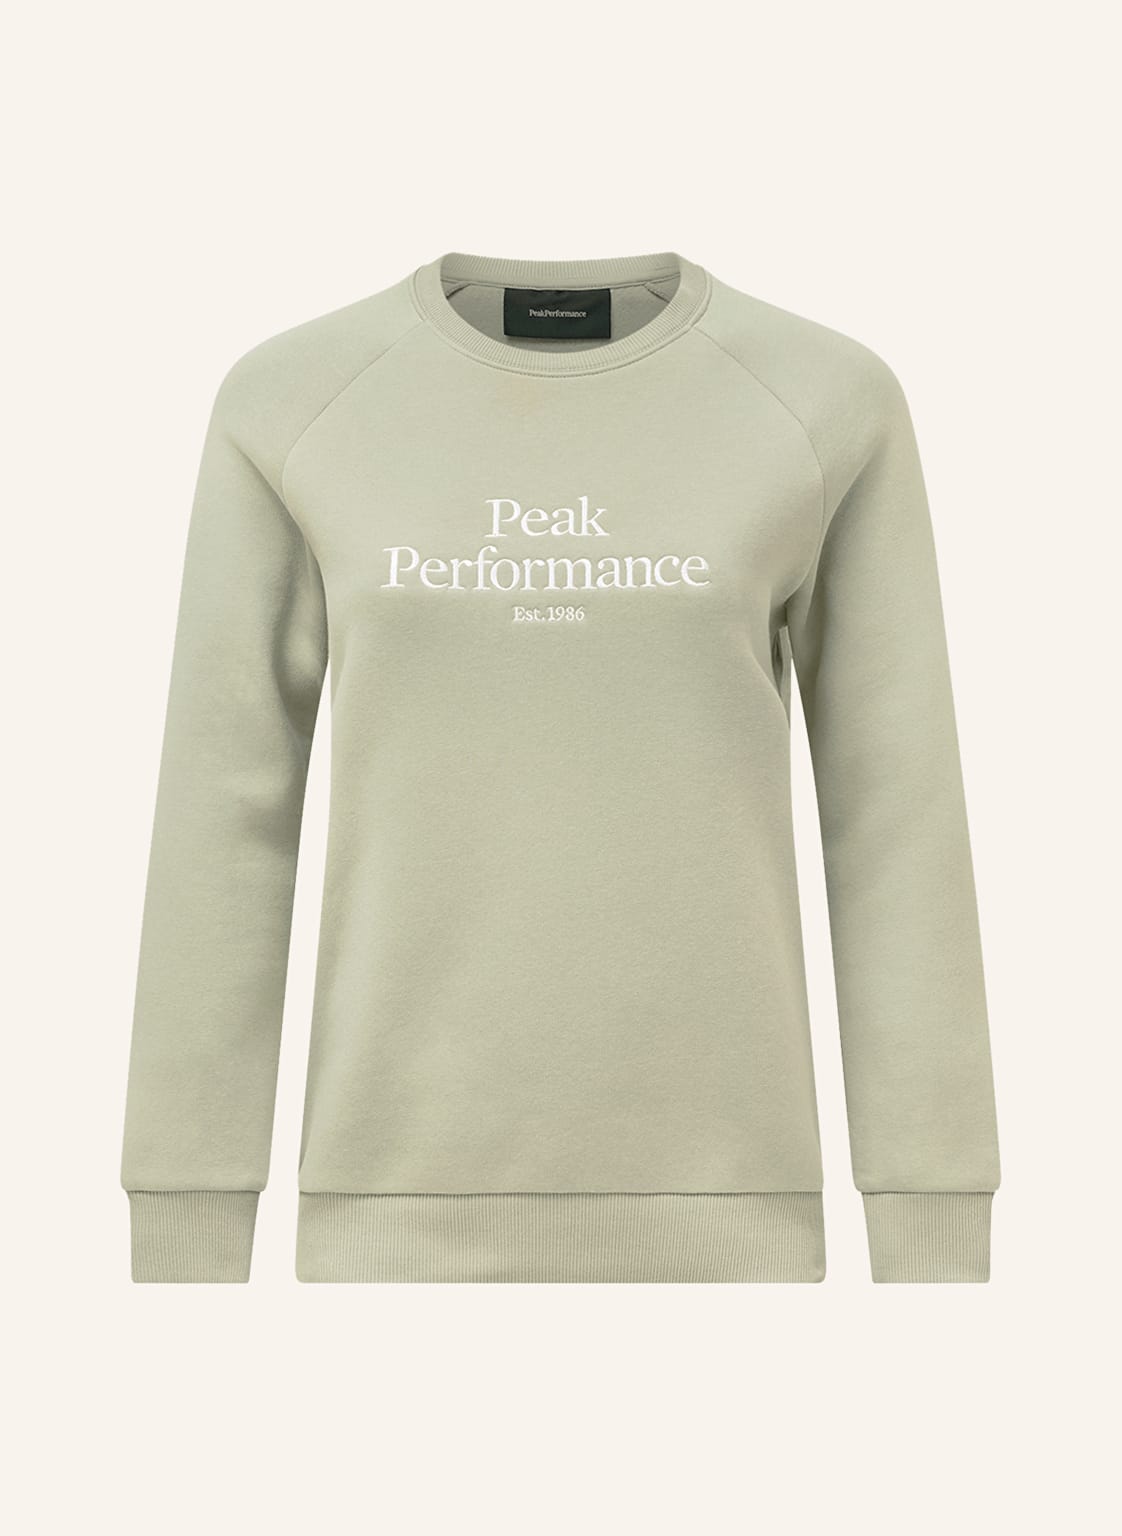 Peak Performance Sweatshirt gruen von Peak Performance